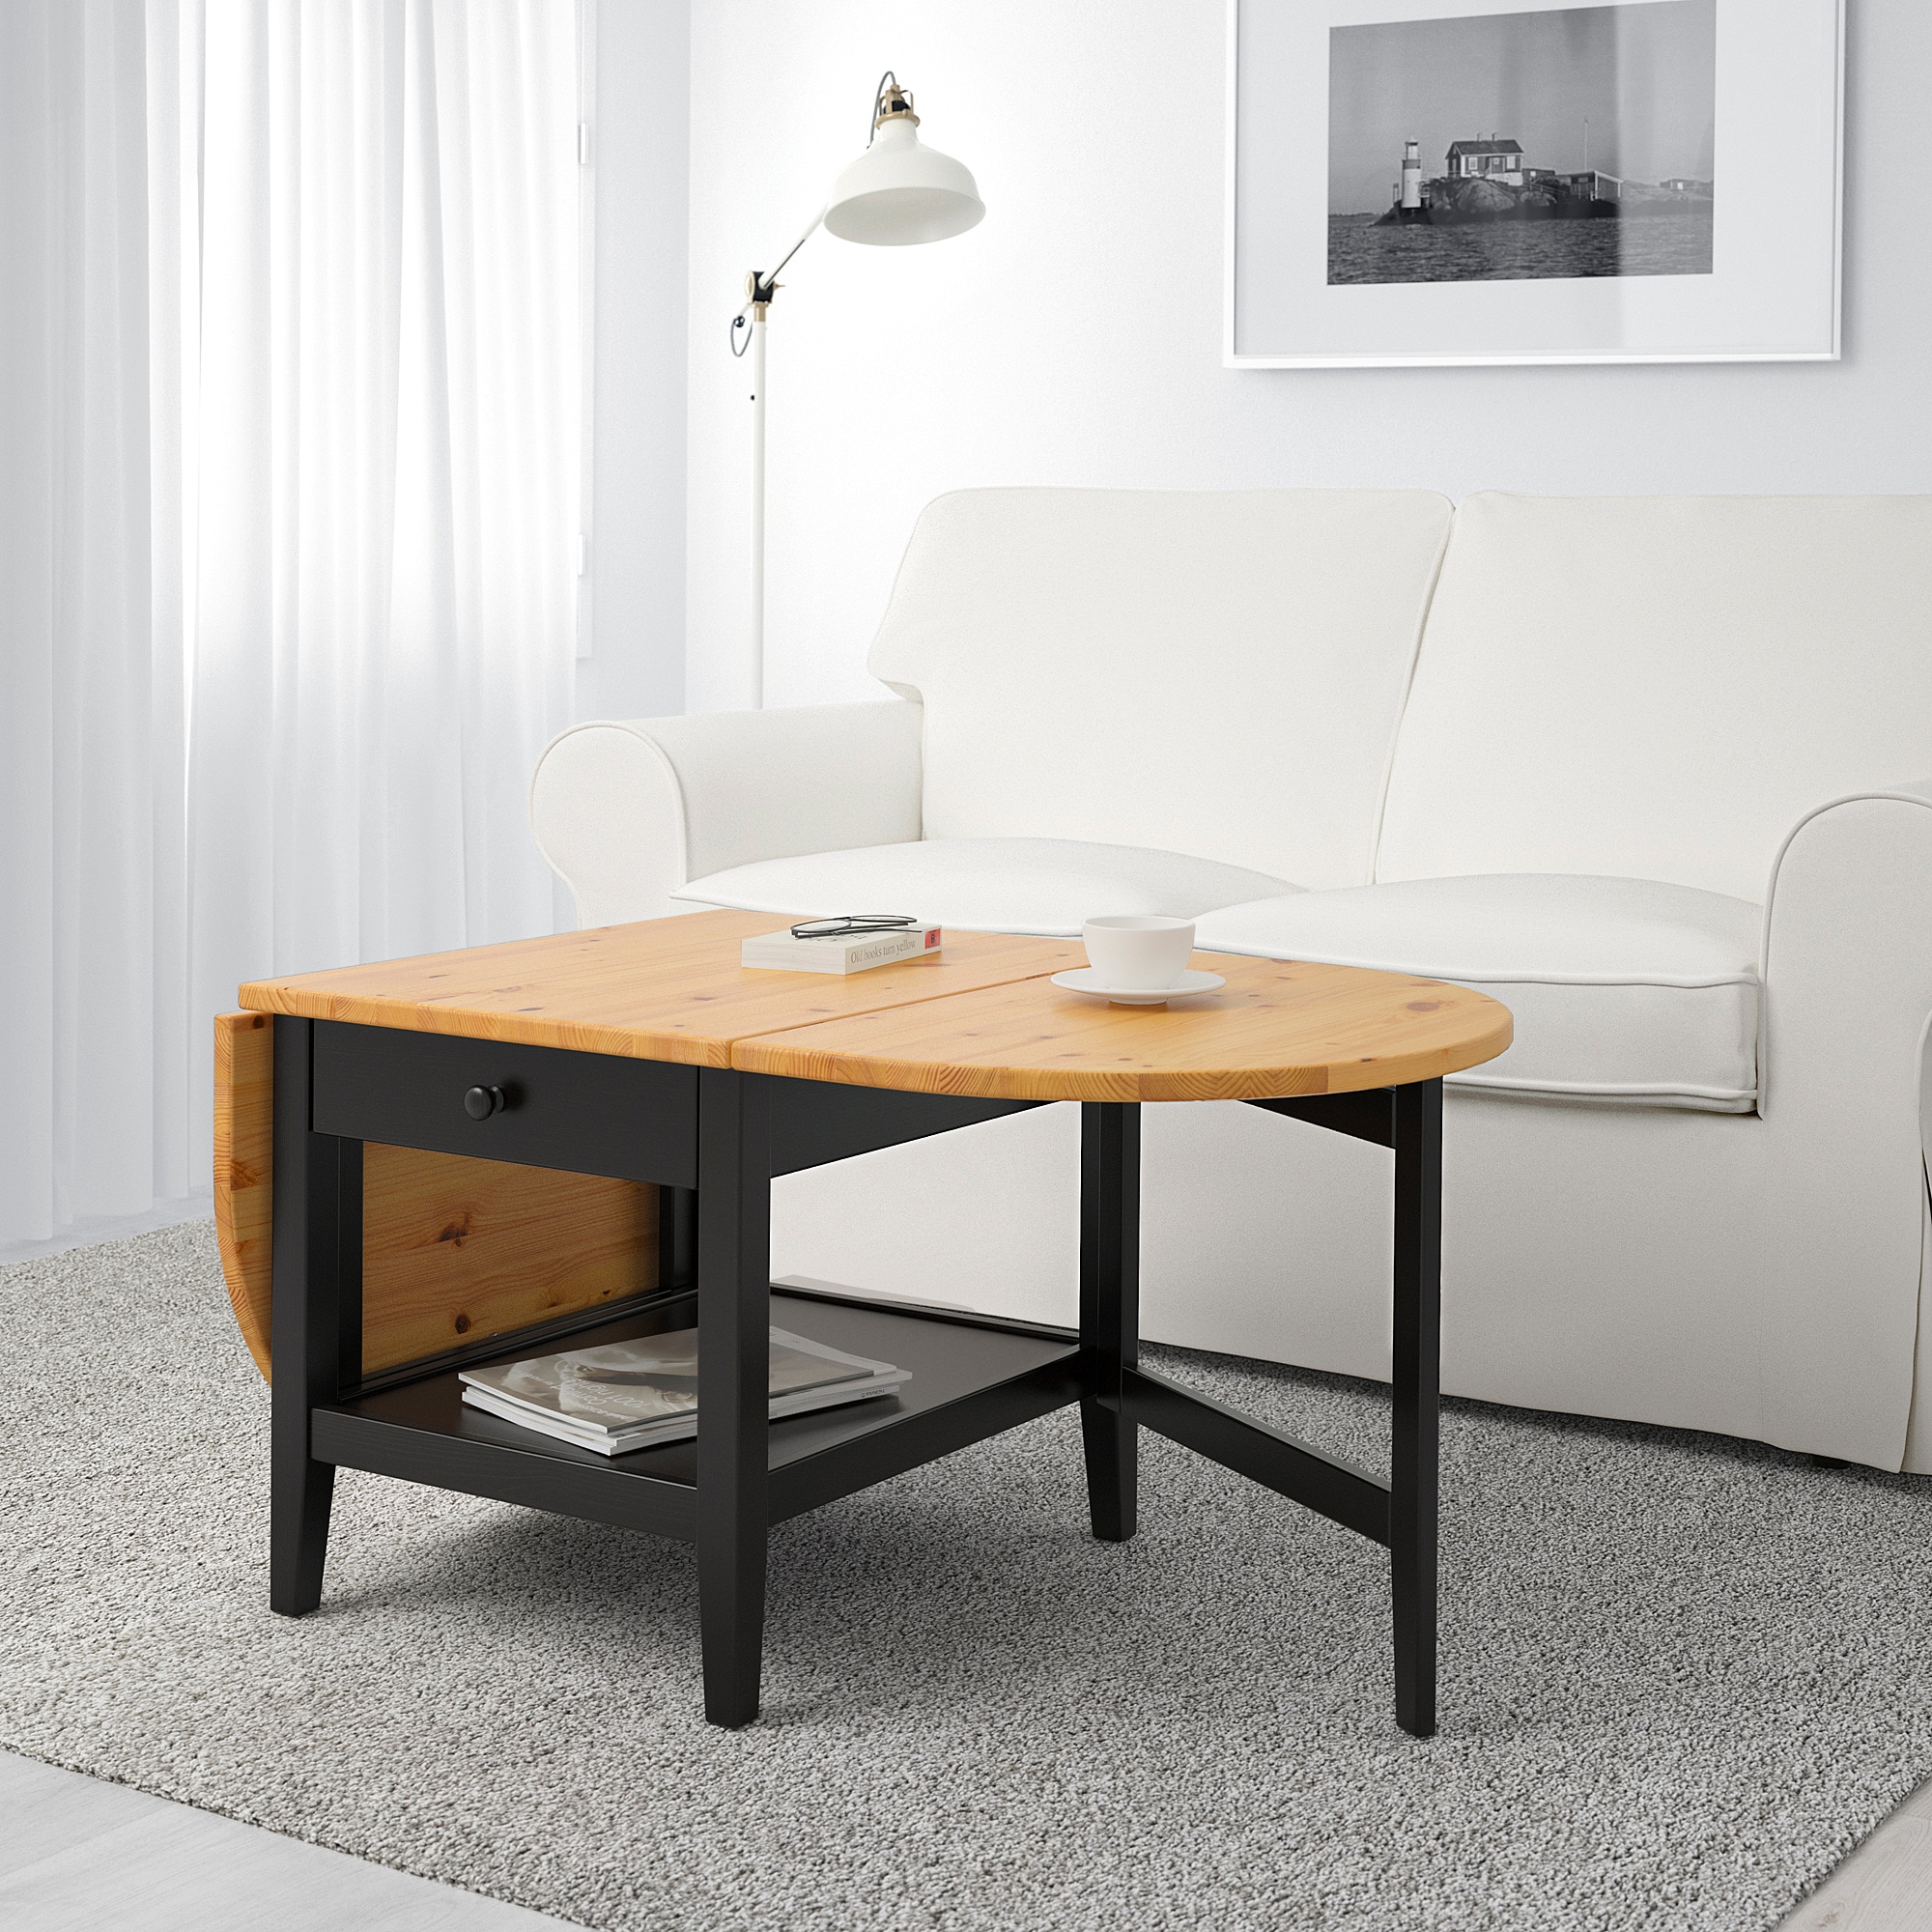 МАЛМСТА Журнальный стол, черно-коричневый, x80 см купить в интернет-магазине - IKEA